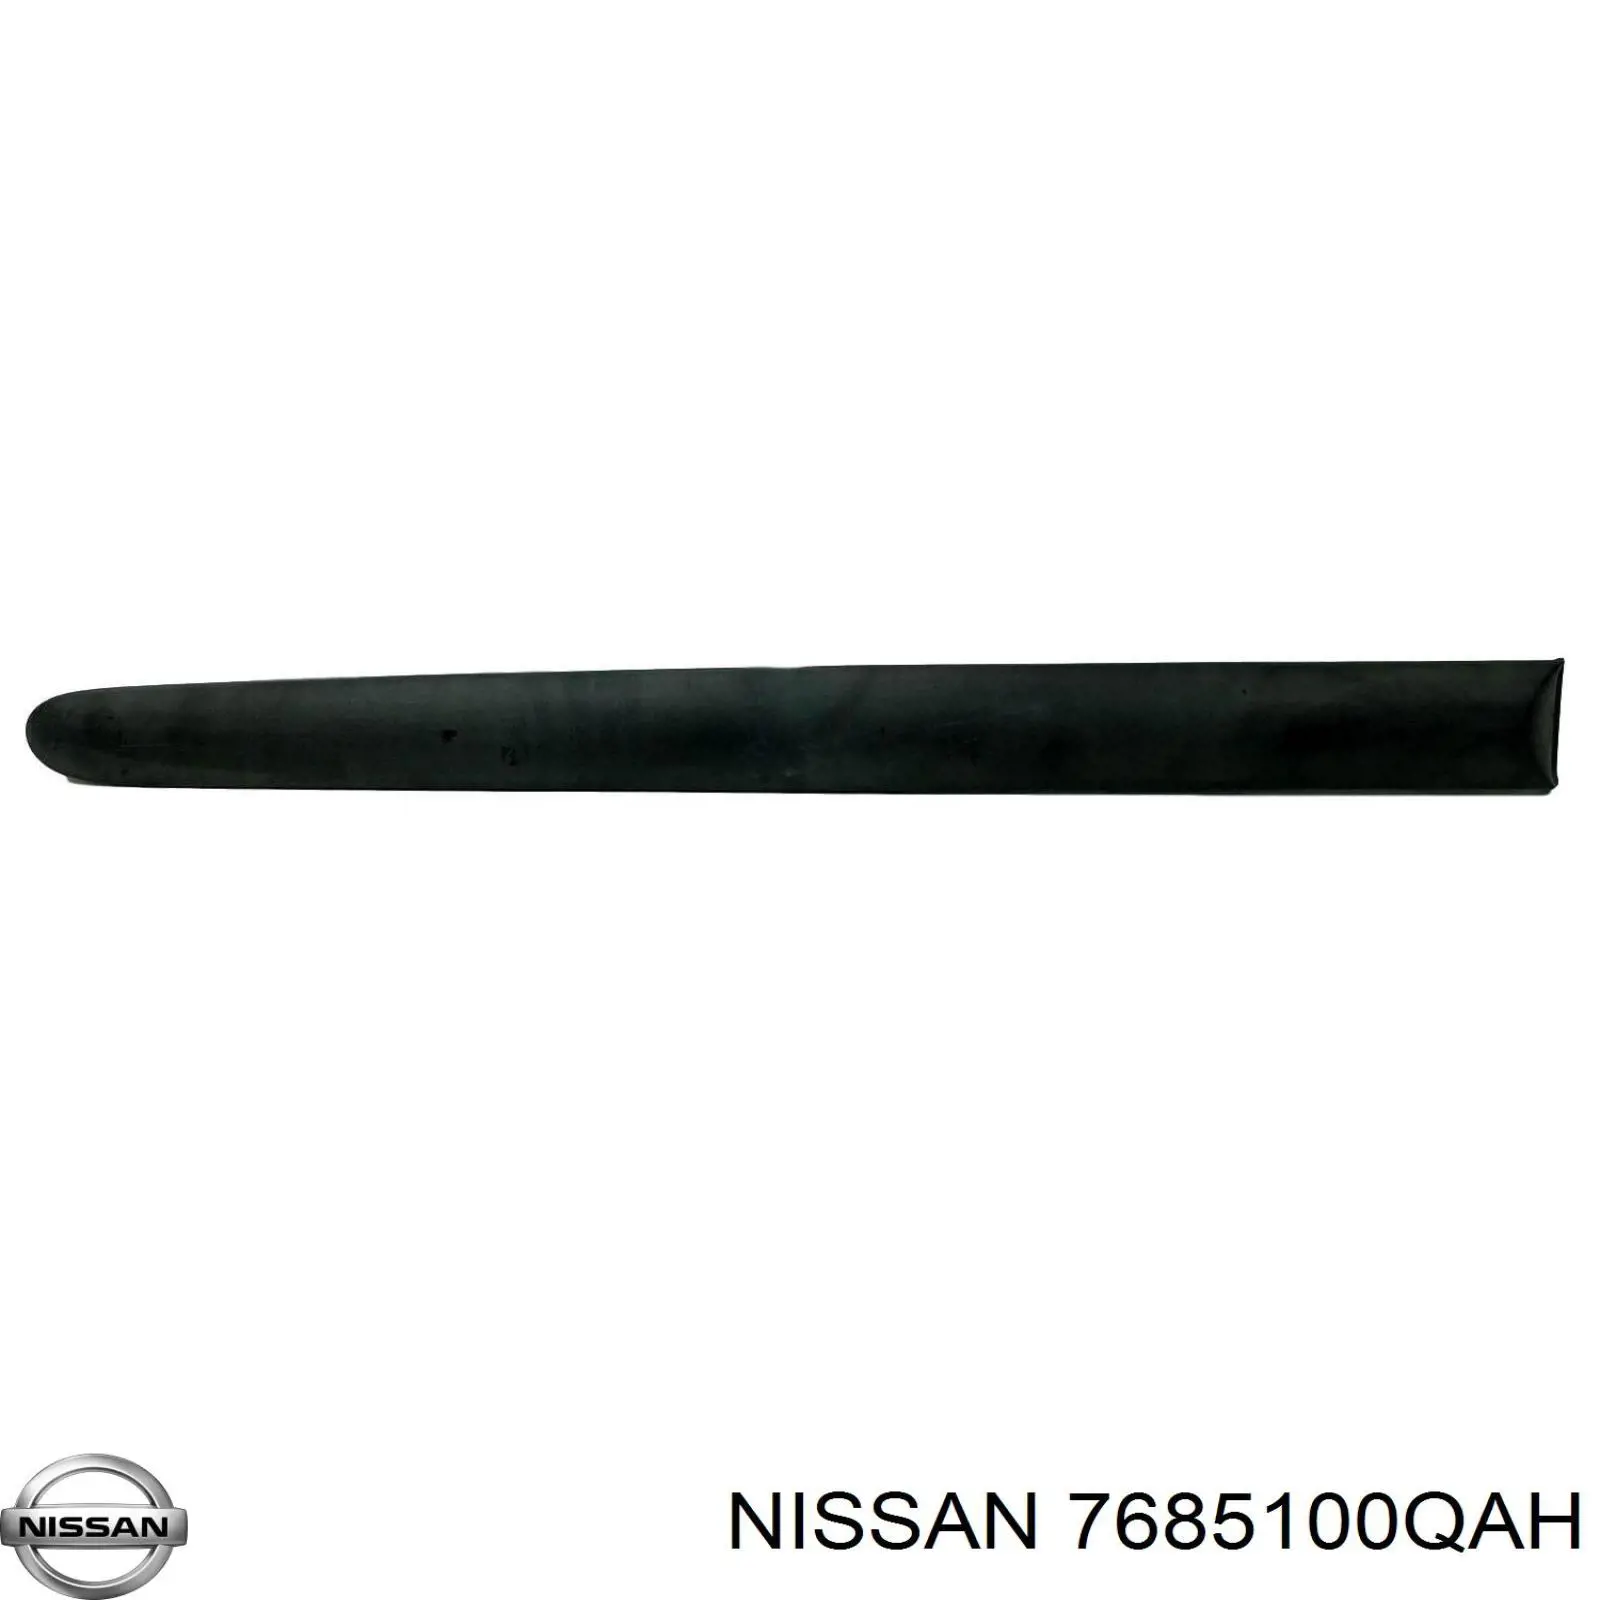 7685100QAH Nissan moldura de guardabarro trasero izquierdo